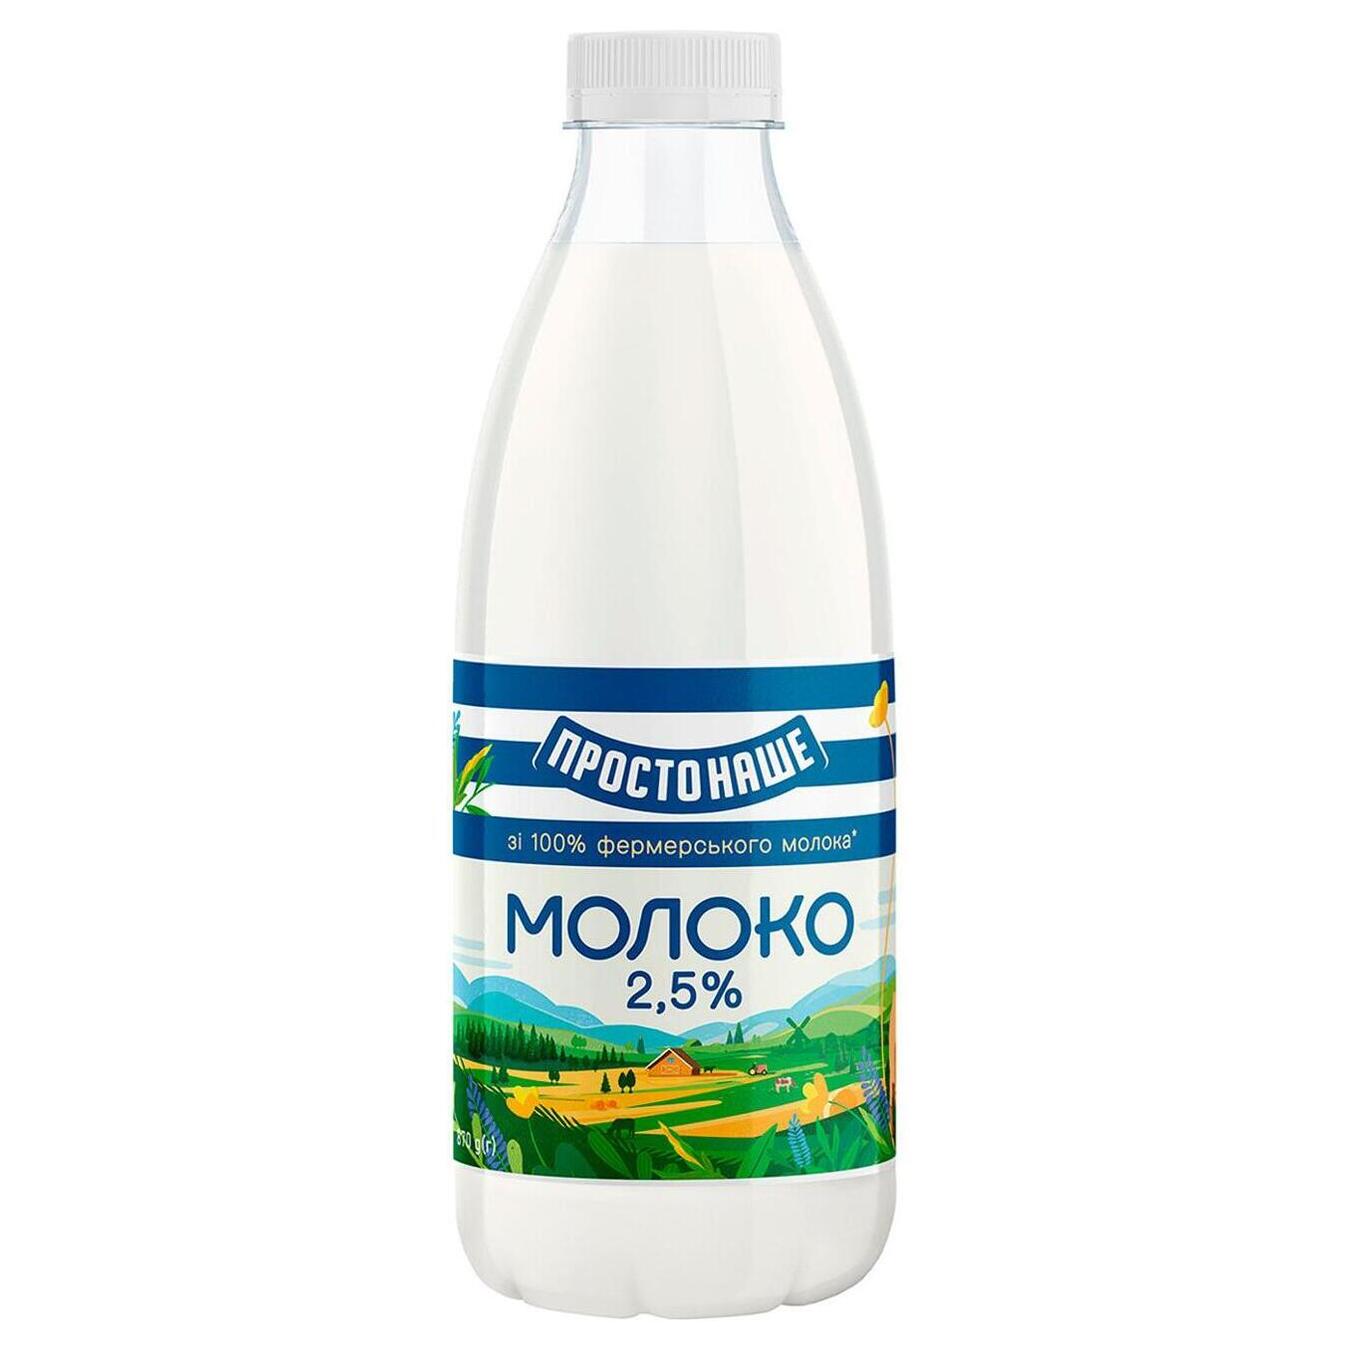 Молоко пастеризованное Простонаше 2,5% пет 870